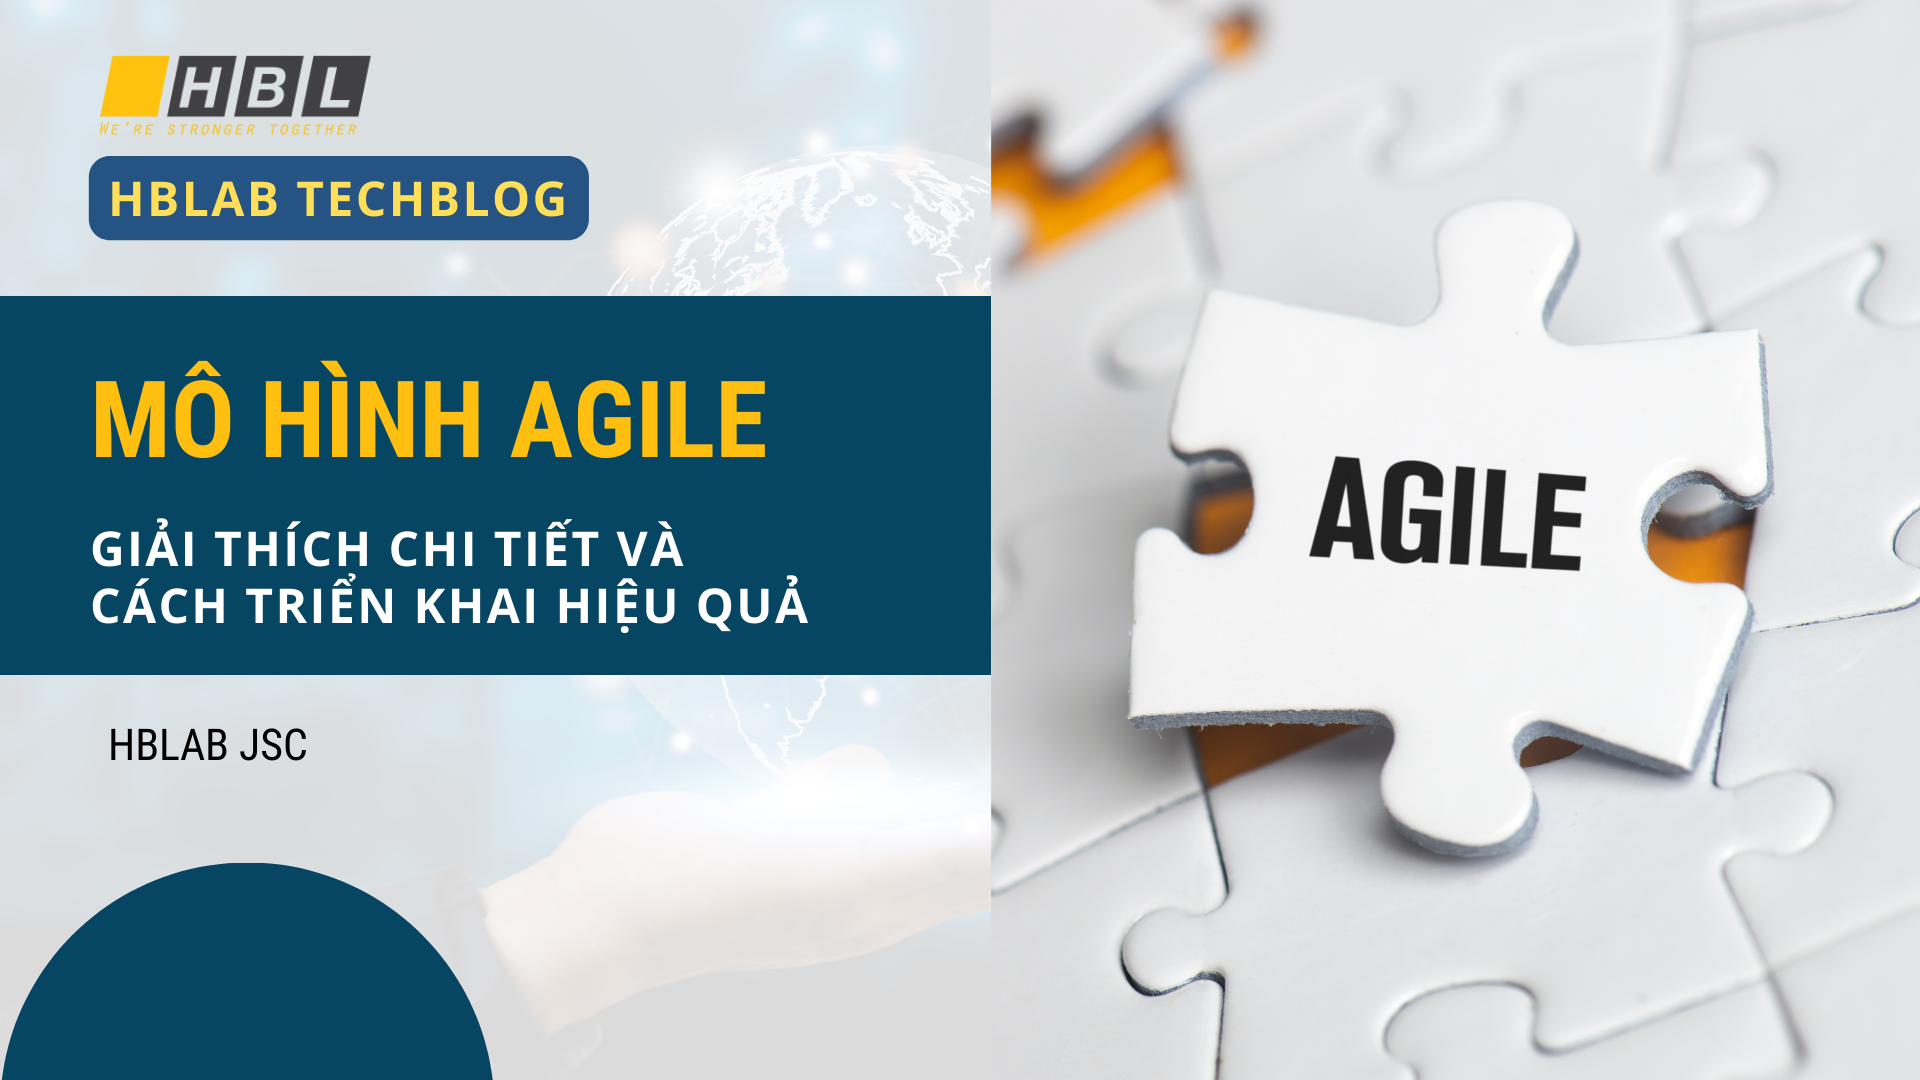 Mô hình Agile – Giải thích chi tiết và cách triển khai hiệu quả